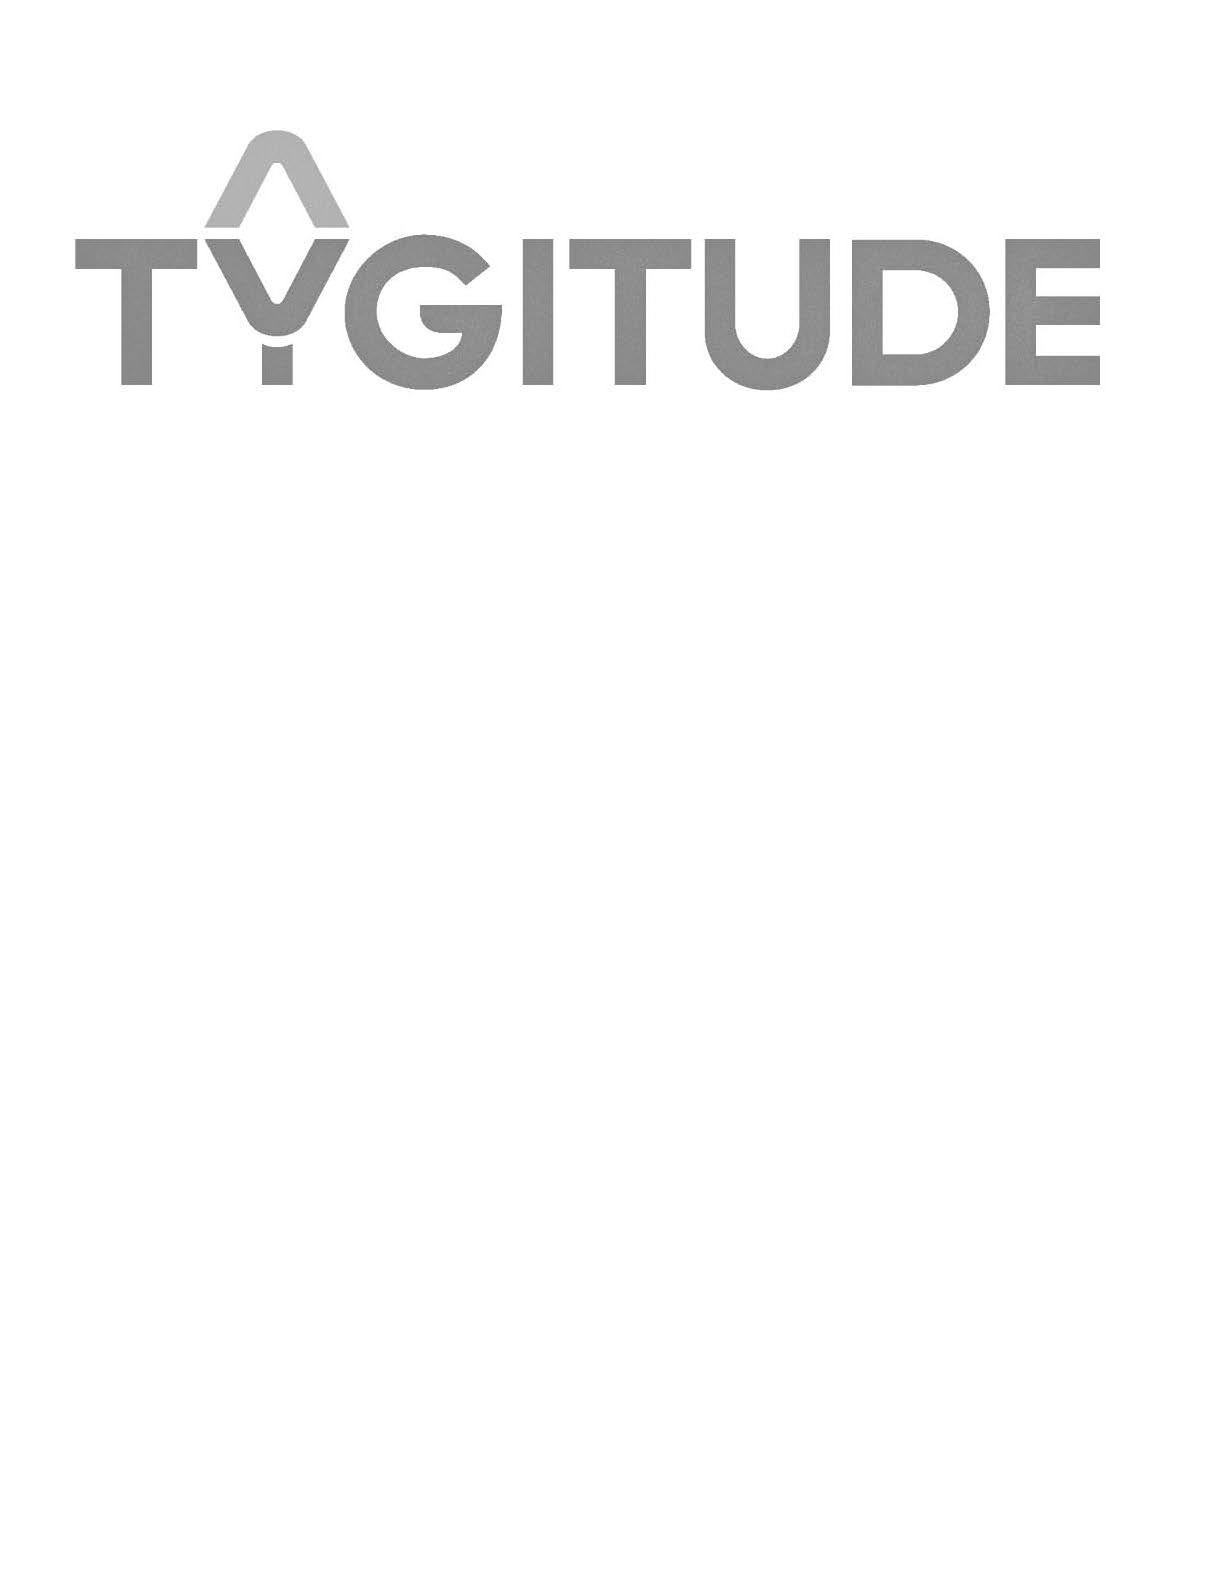  TYGITUDE